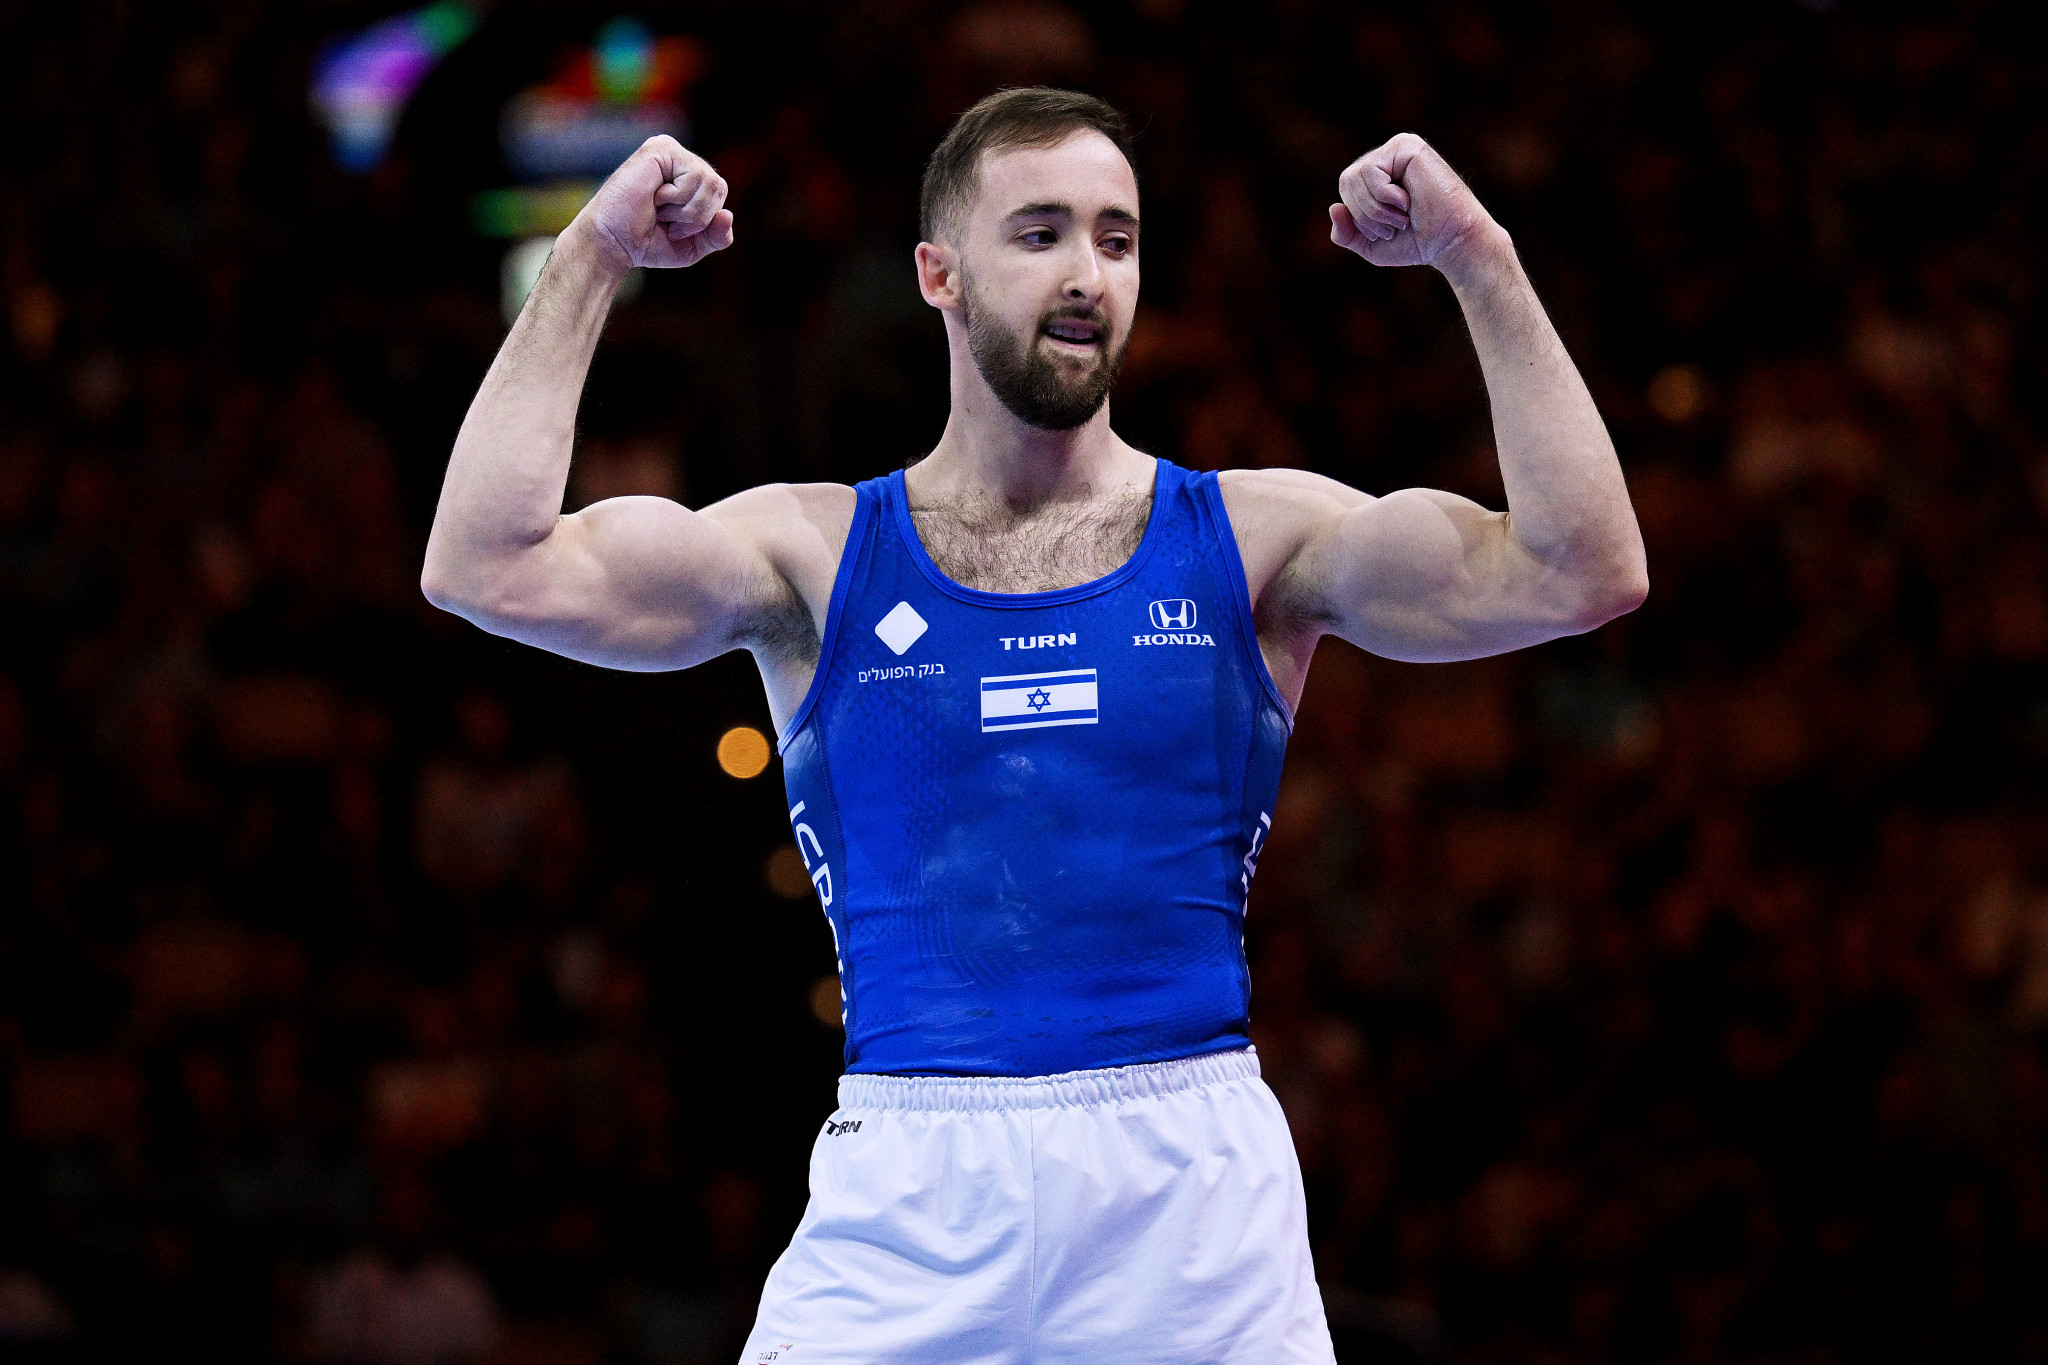 Olympic champion Dolgopyat among artistic gymnastics winners on final day of Munich 2022